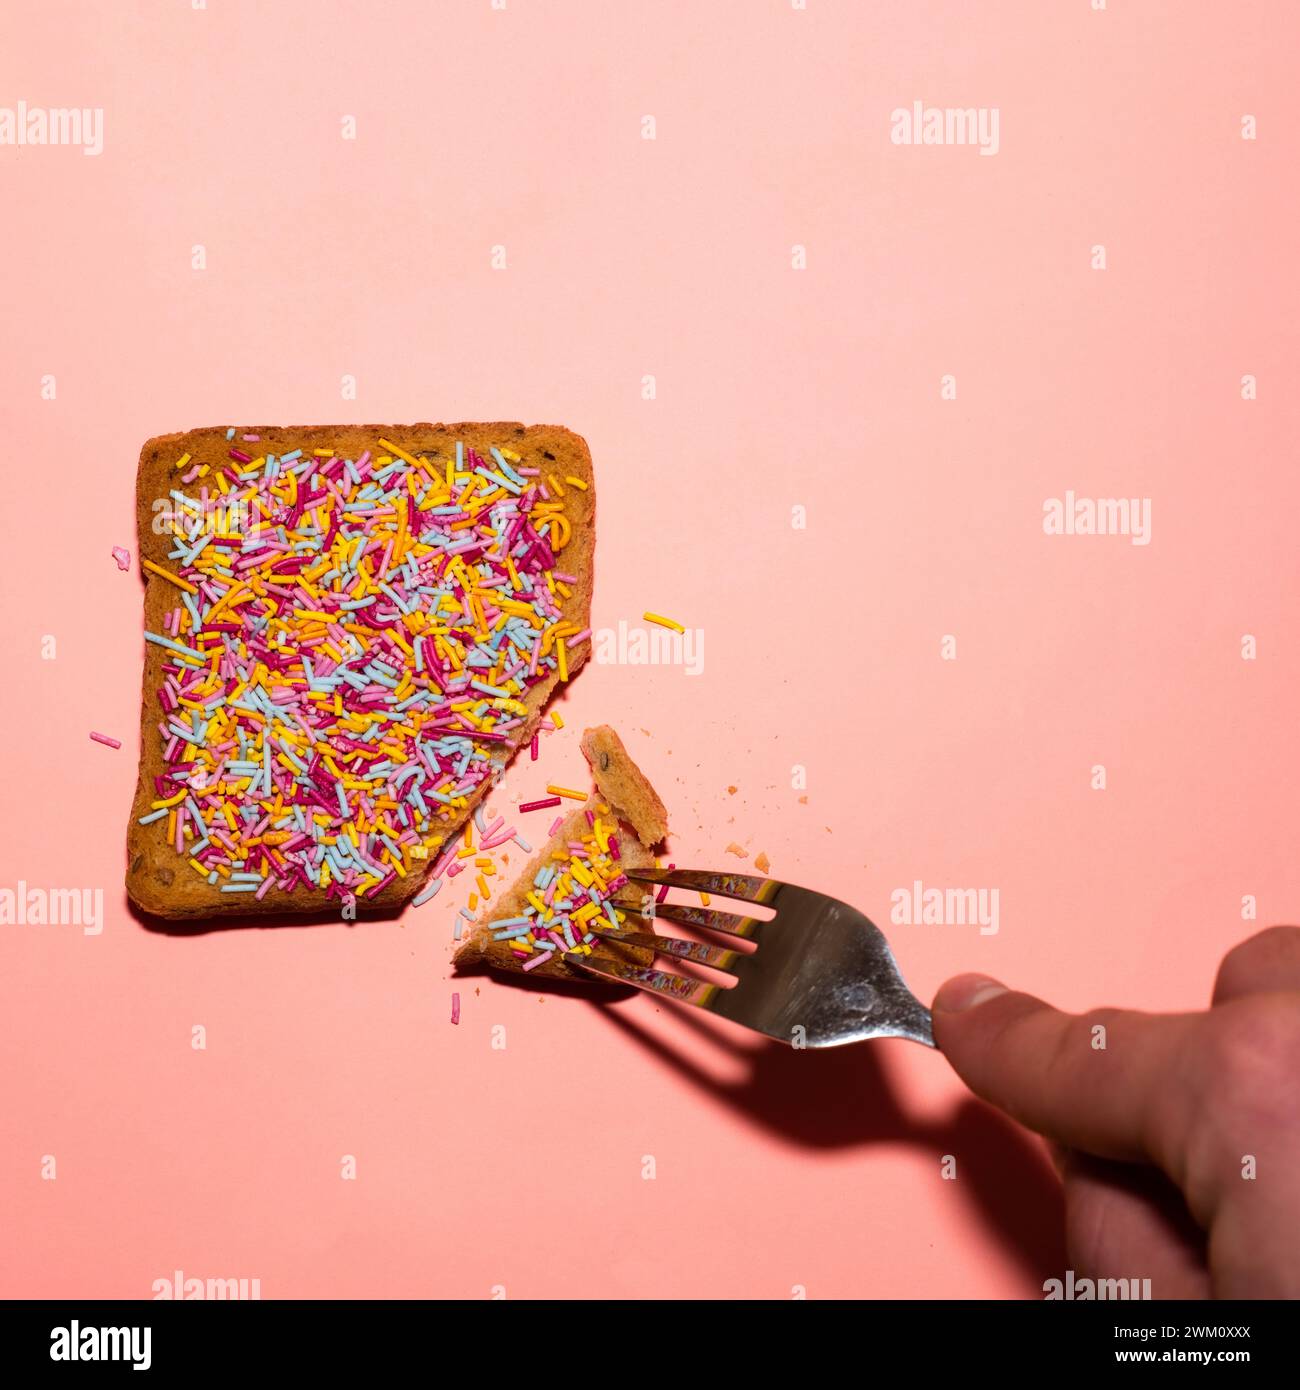 Toast avec des saupoudrages colorés et une fourchette sur fond rose. Concept alimentaire créatif. Banque D'Images